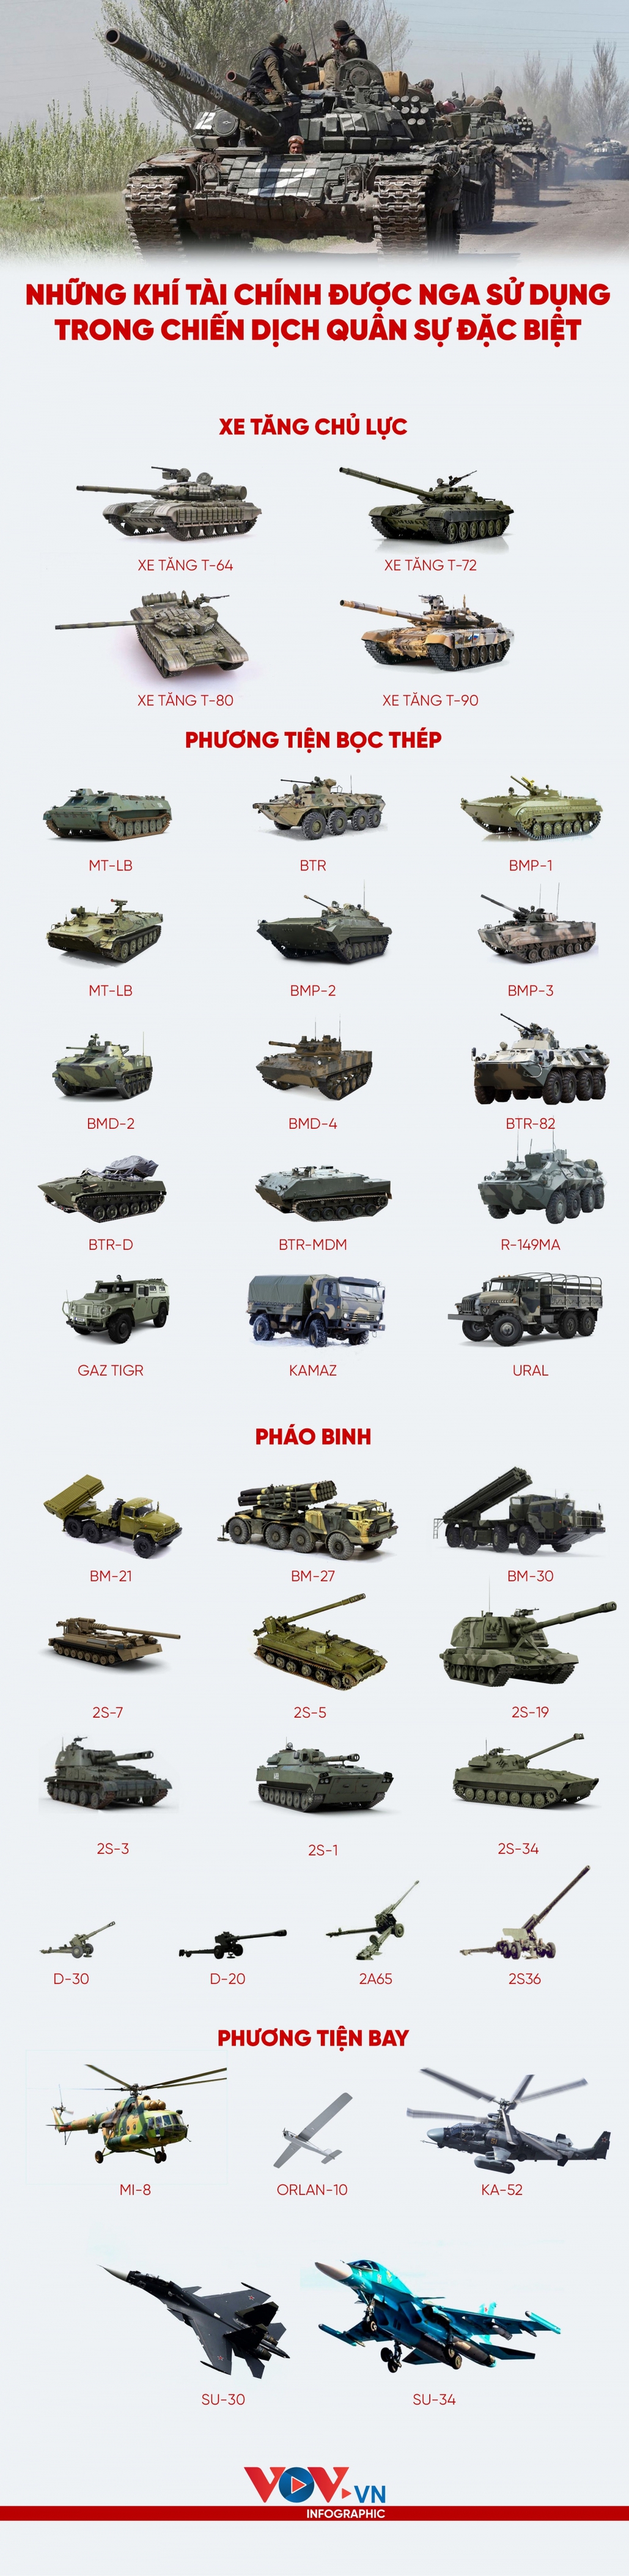 Những vũ khí chính Nga sử dụng trong chiến dịch quân sự đặc biệt ở Ukraine - Ảnh 1.